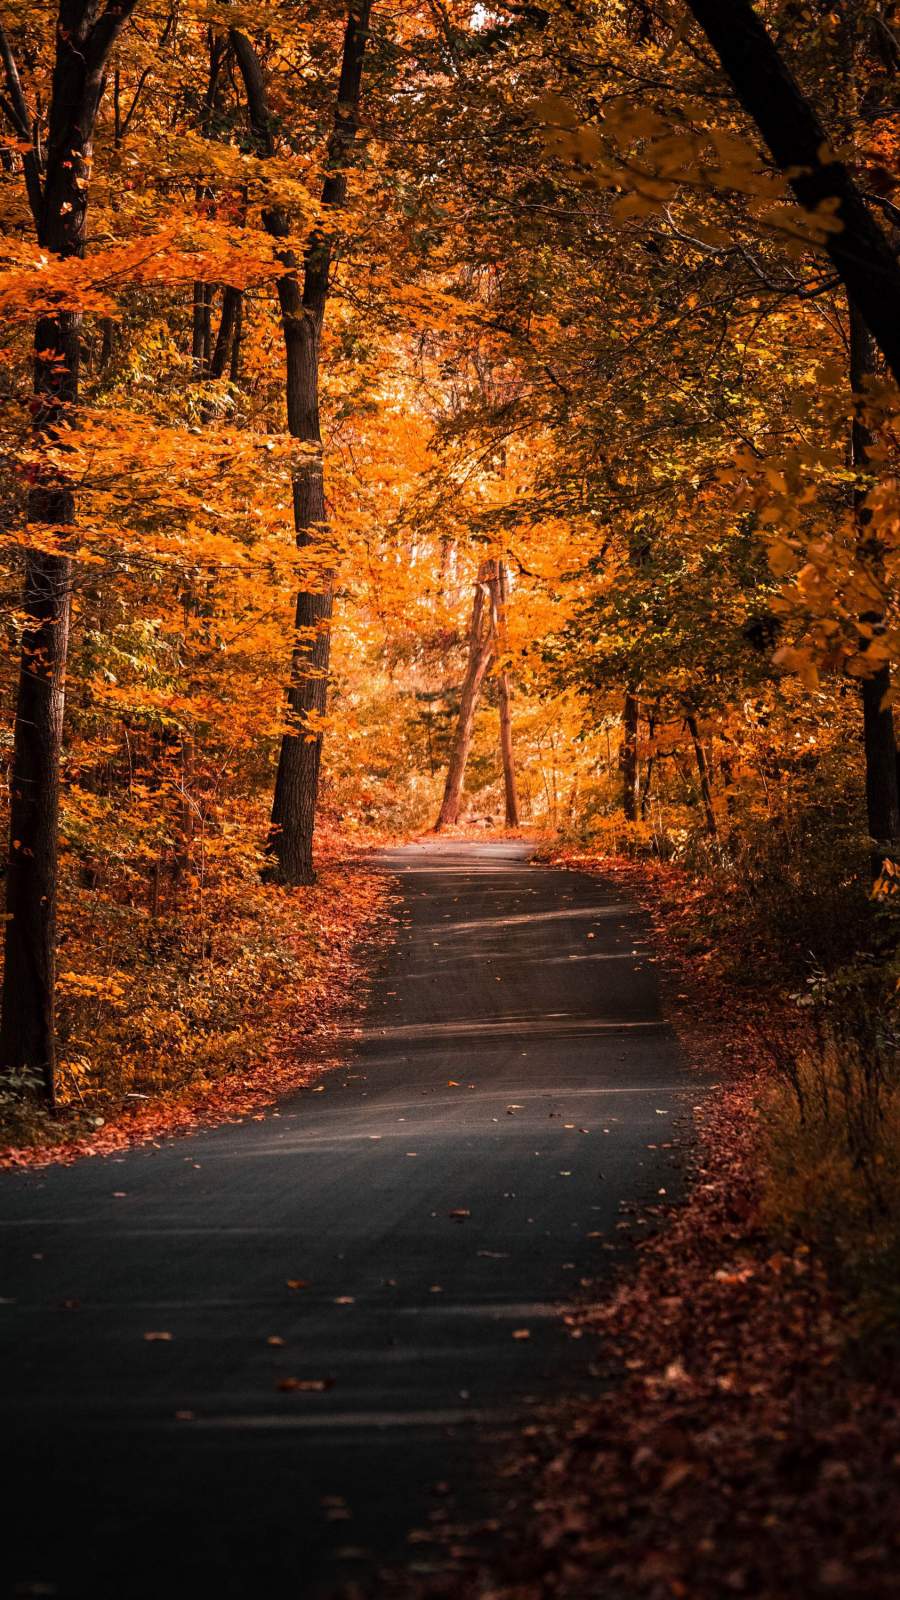 Điểm tô cho mùa thu ngập tràn hạm nhiệt với bộ sưu tập ảnh phong cảnh mùa thu tuyệt đẹp. Những con đường rợp lá vàng, rực rỡ, tràn ngập ánh sáng vàng ươm, sẽ mang đến cho bạn những trải nghiệm tuyệt vời về mùa thu.